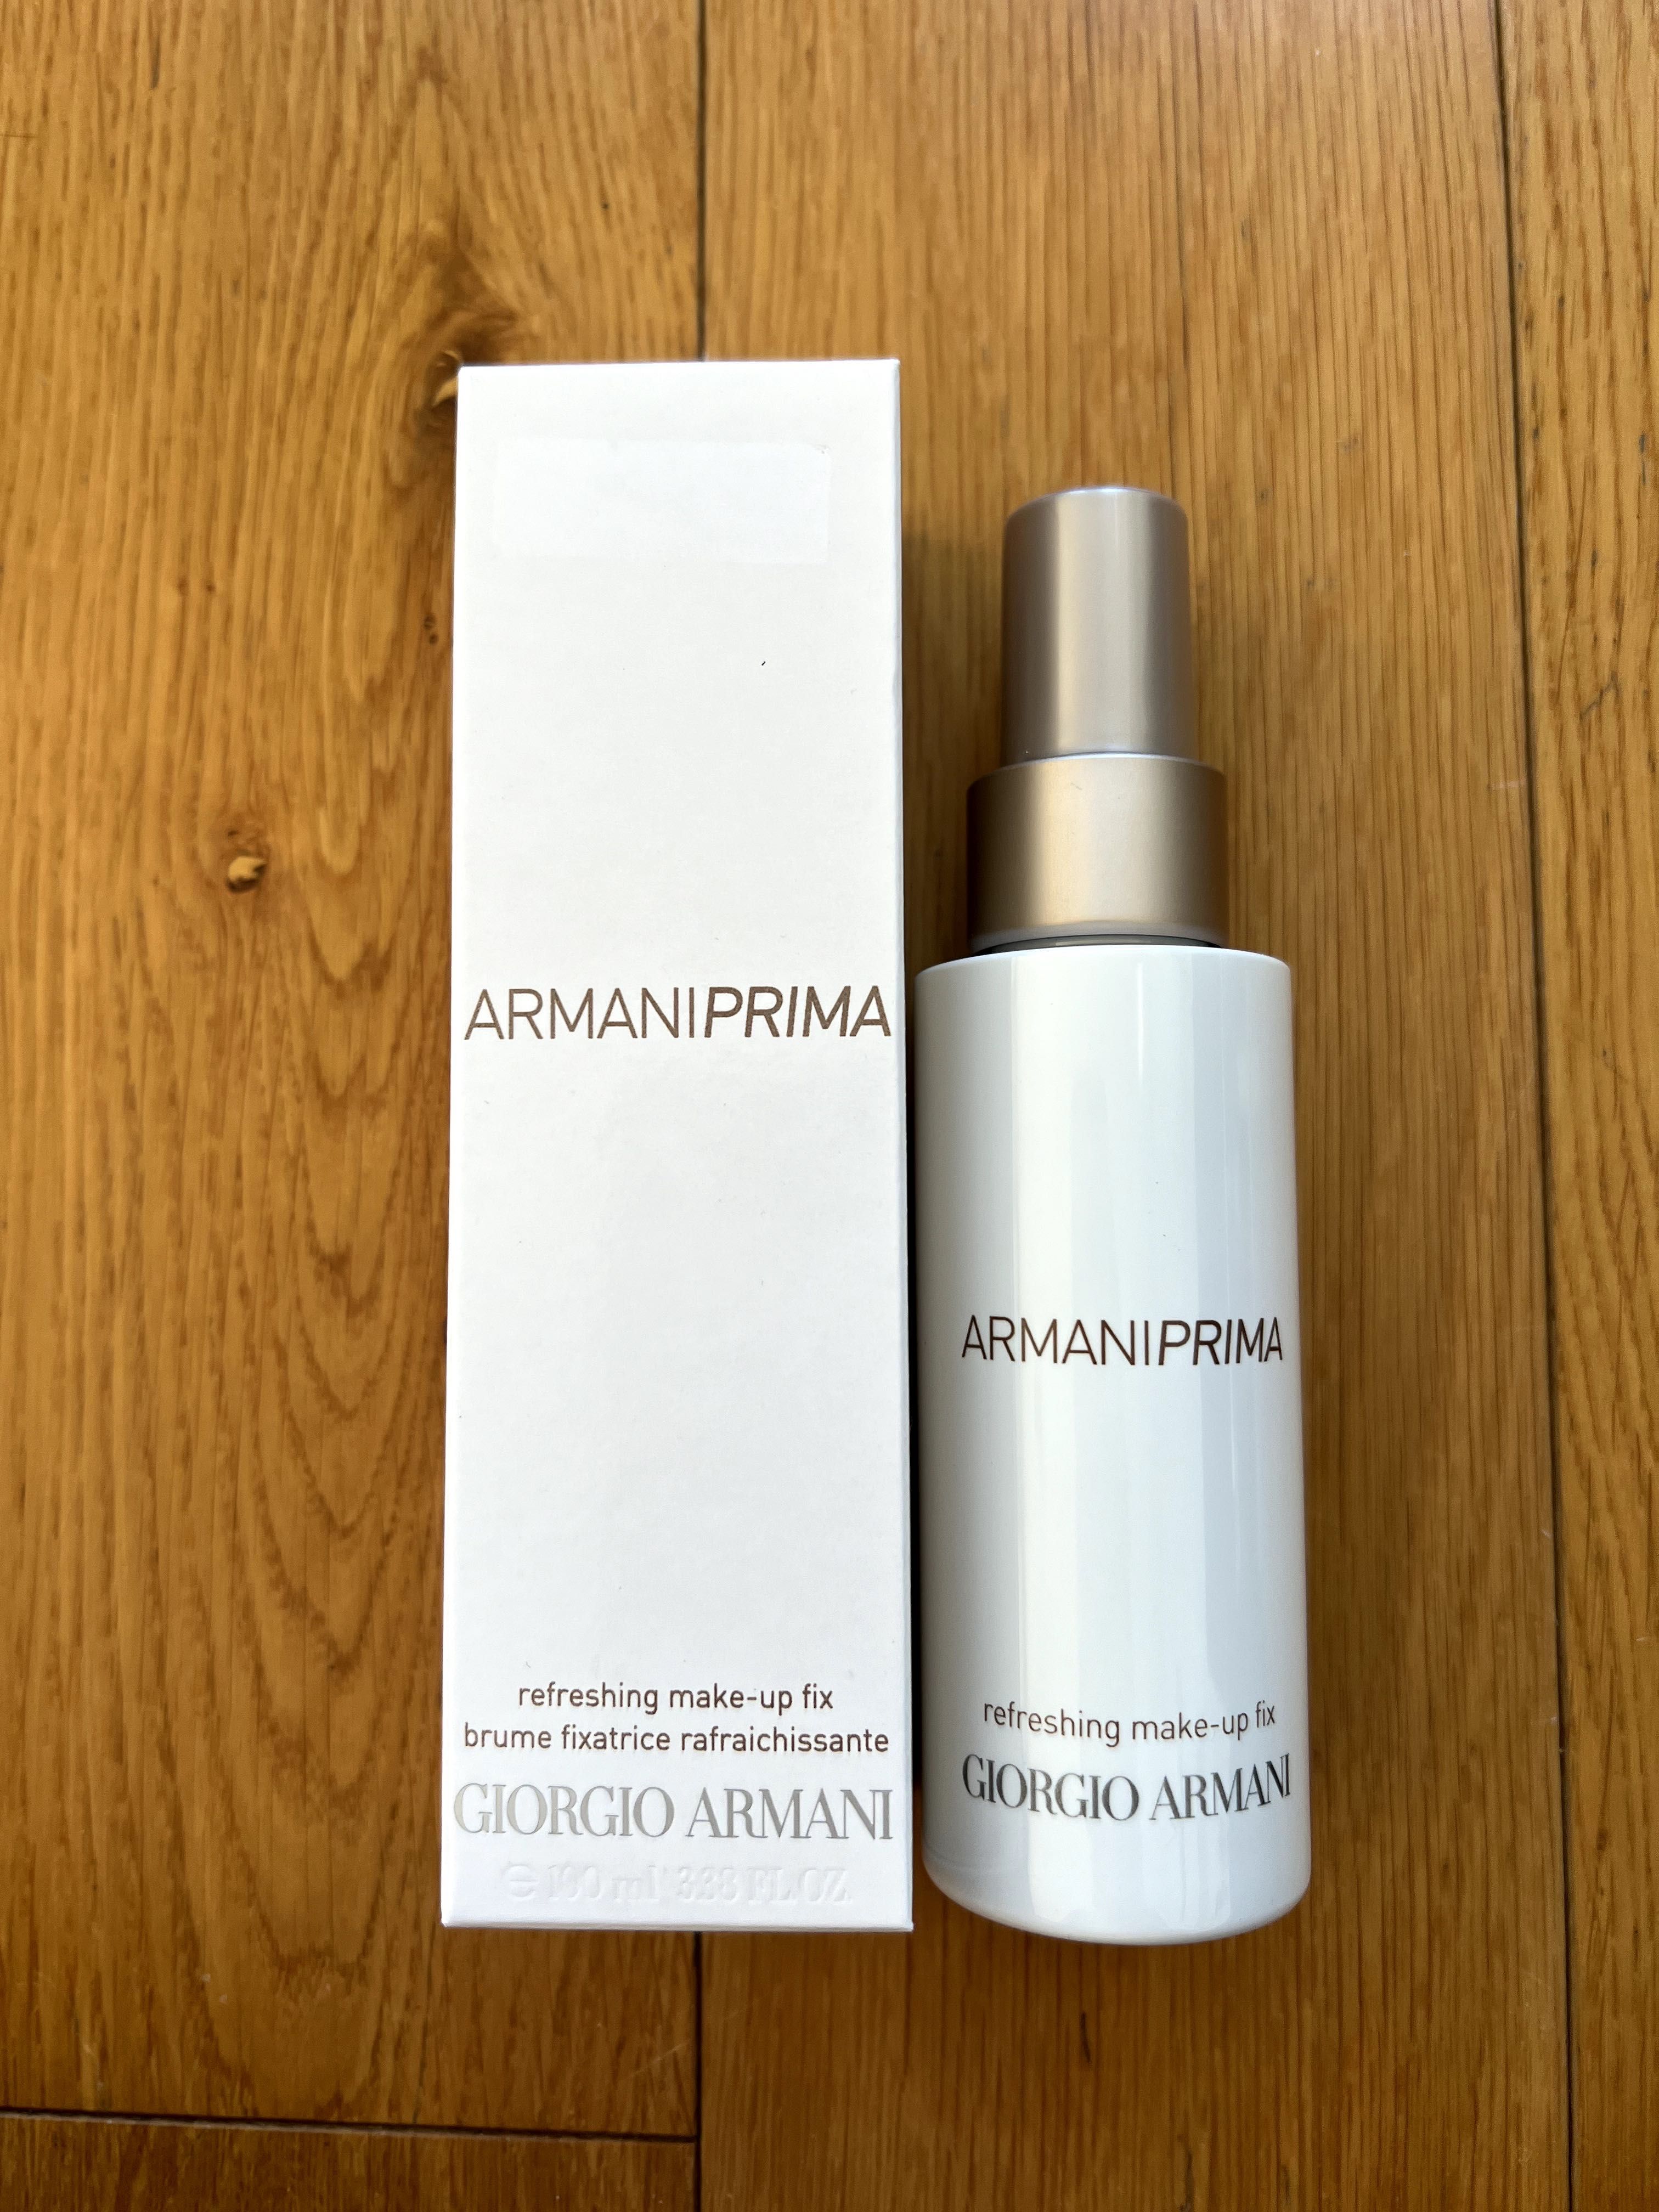 Giorgio Armani Prima Refreshing Make-Up Fix odświeżająca mgiełka 100ml